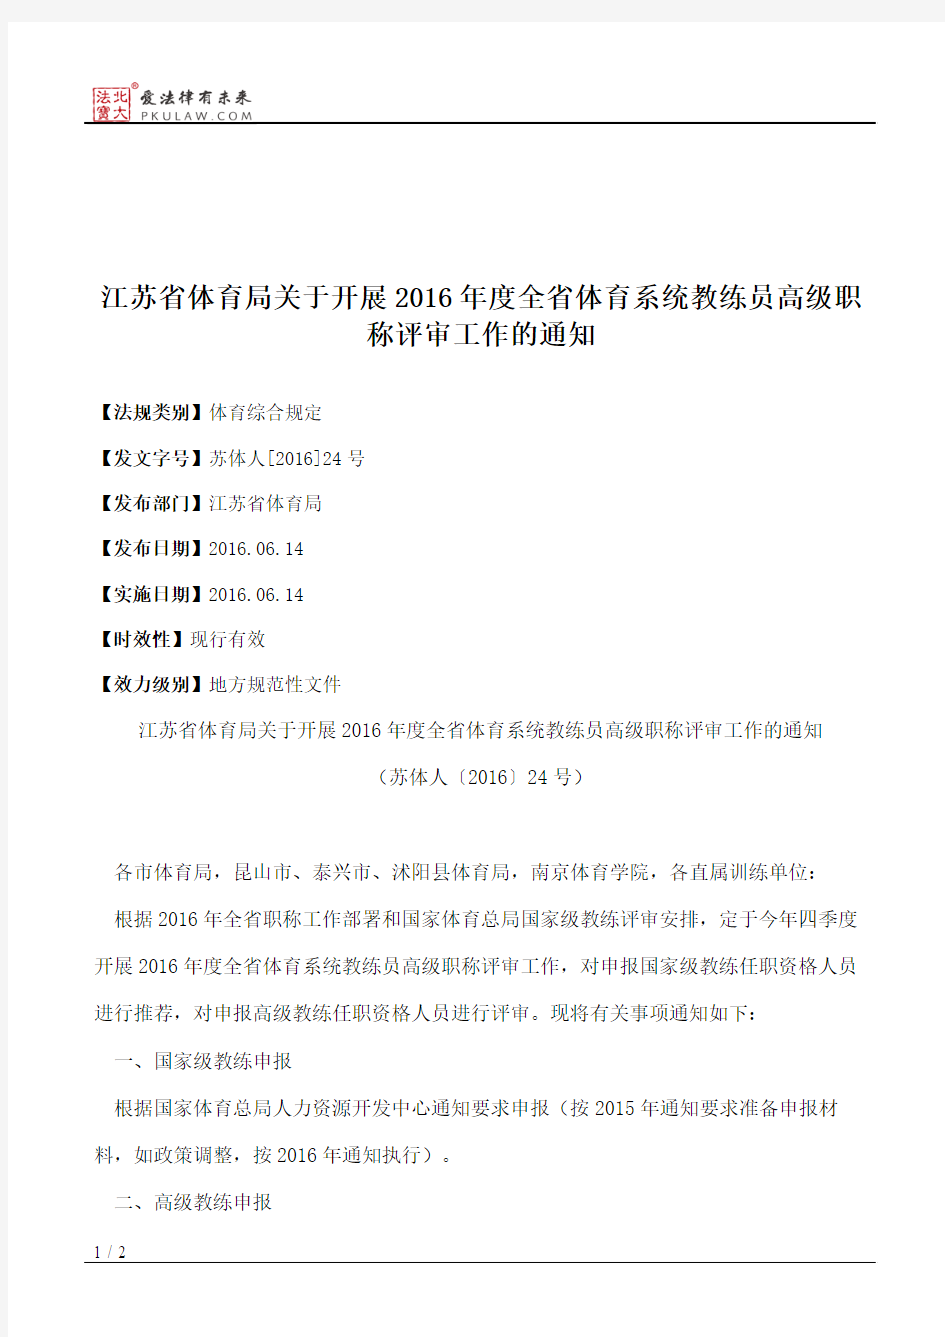 江苏省体育局关于开展2016年度全省体育系统教练员高级职称评审工作的通知